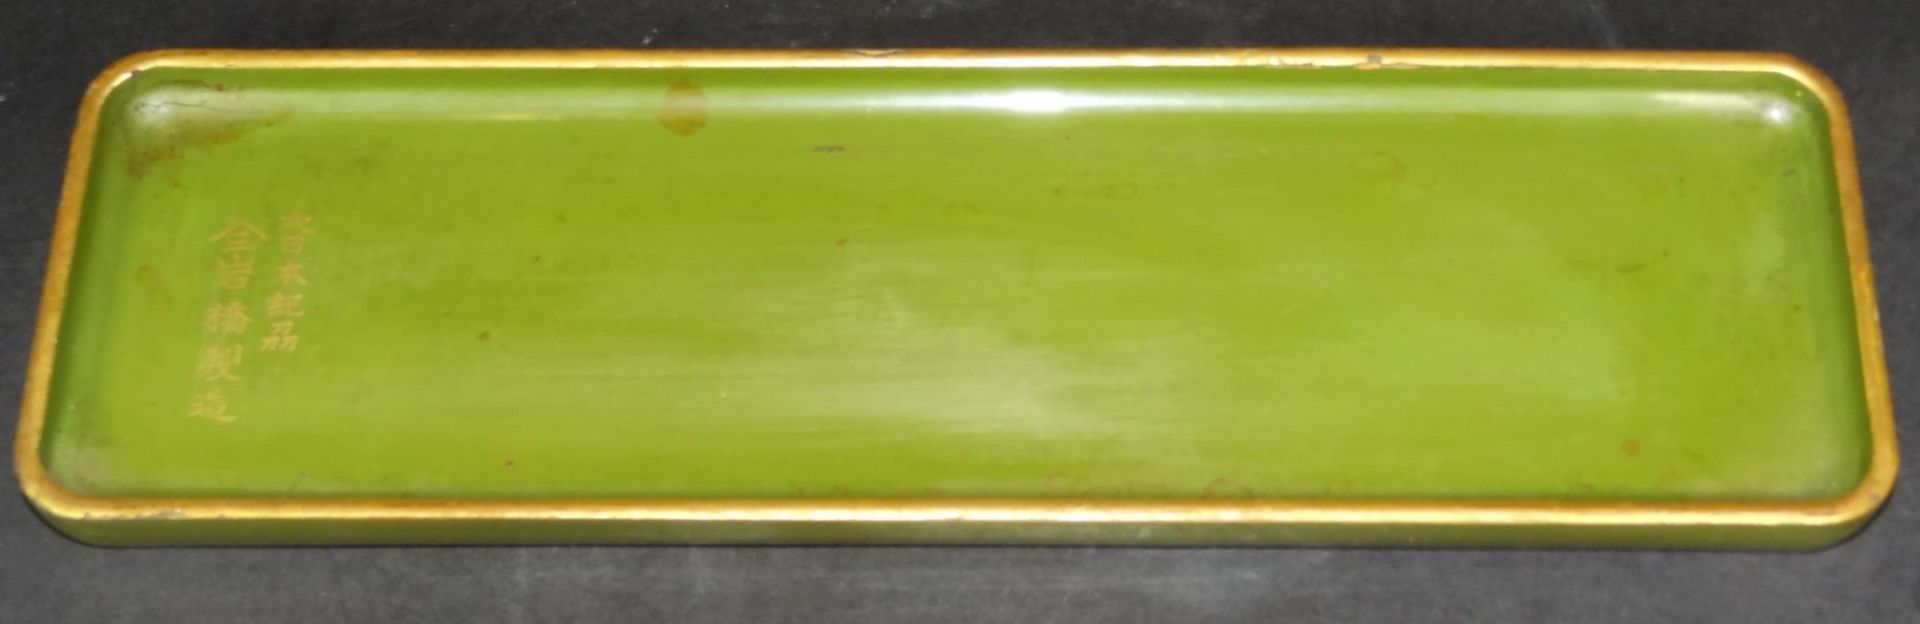 kl. grüne Lackschale, chines. beschriftet, 9,5x31 c- - -22.61 % buyer's premium on the hammer - Bild 2 aus 4